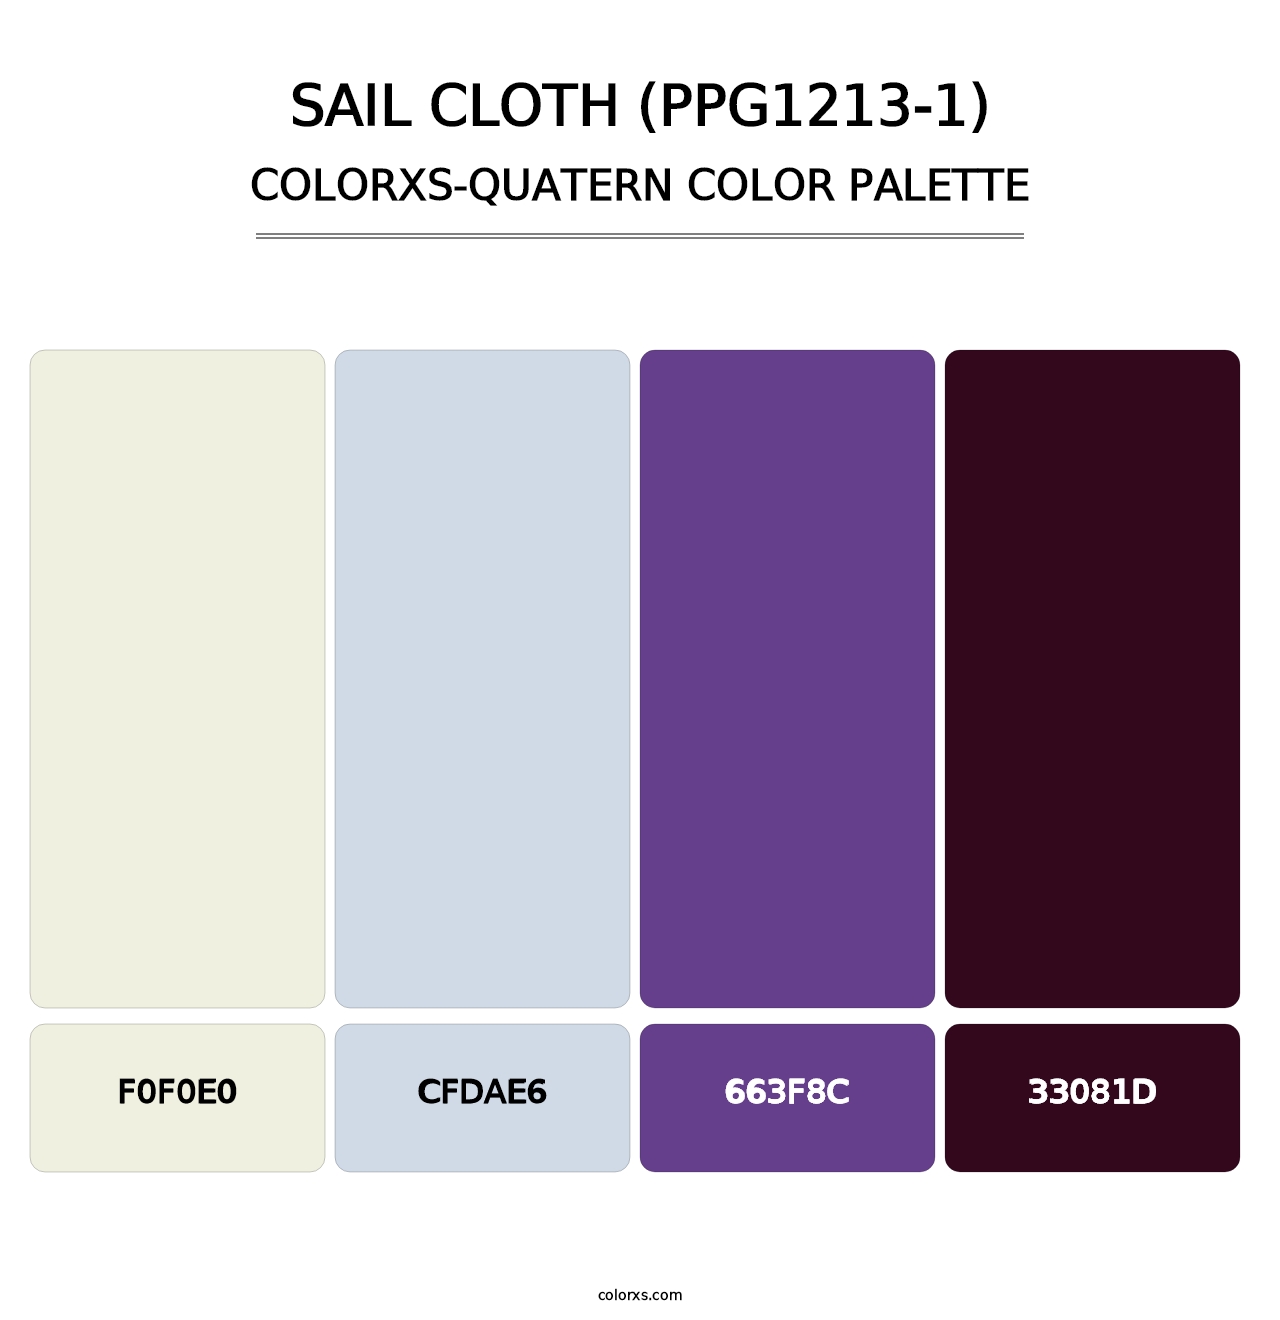 Sail Cloth (PPG1213-1) - Colorxs Quatern Palette